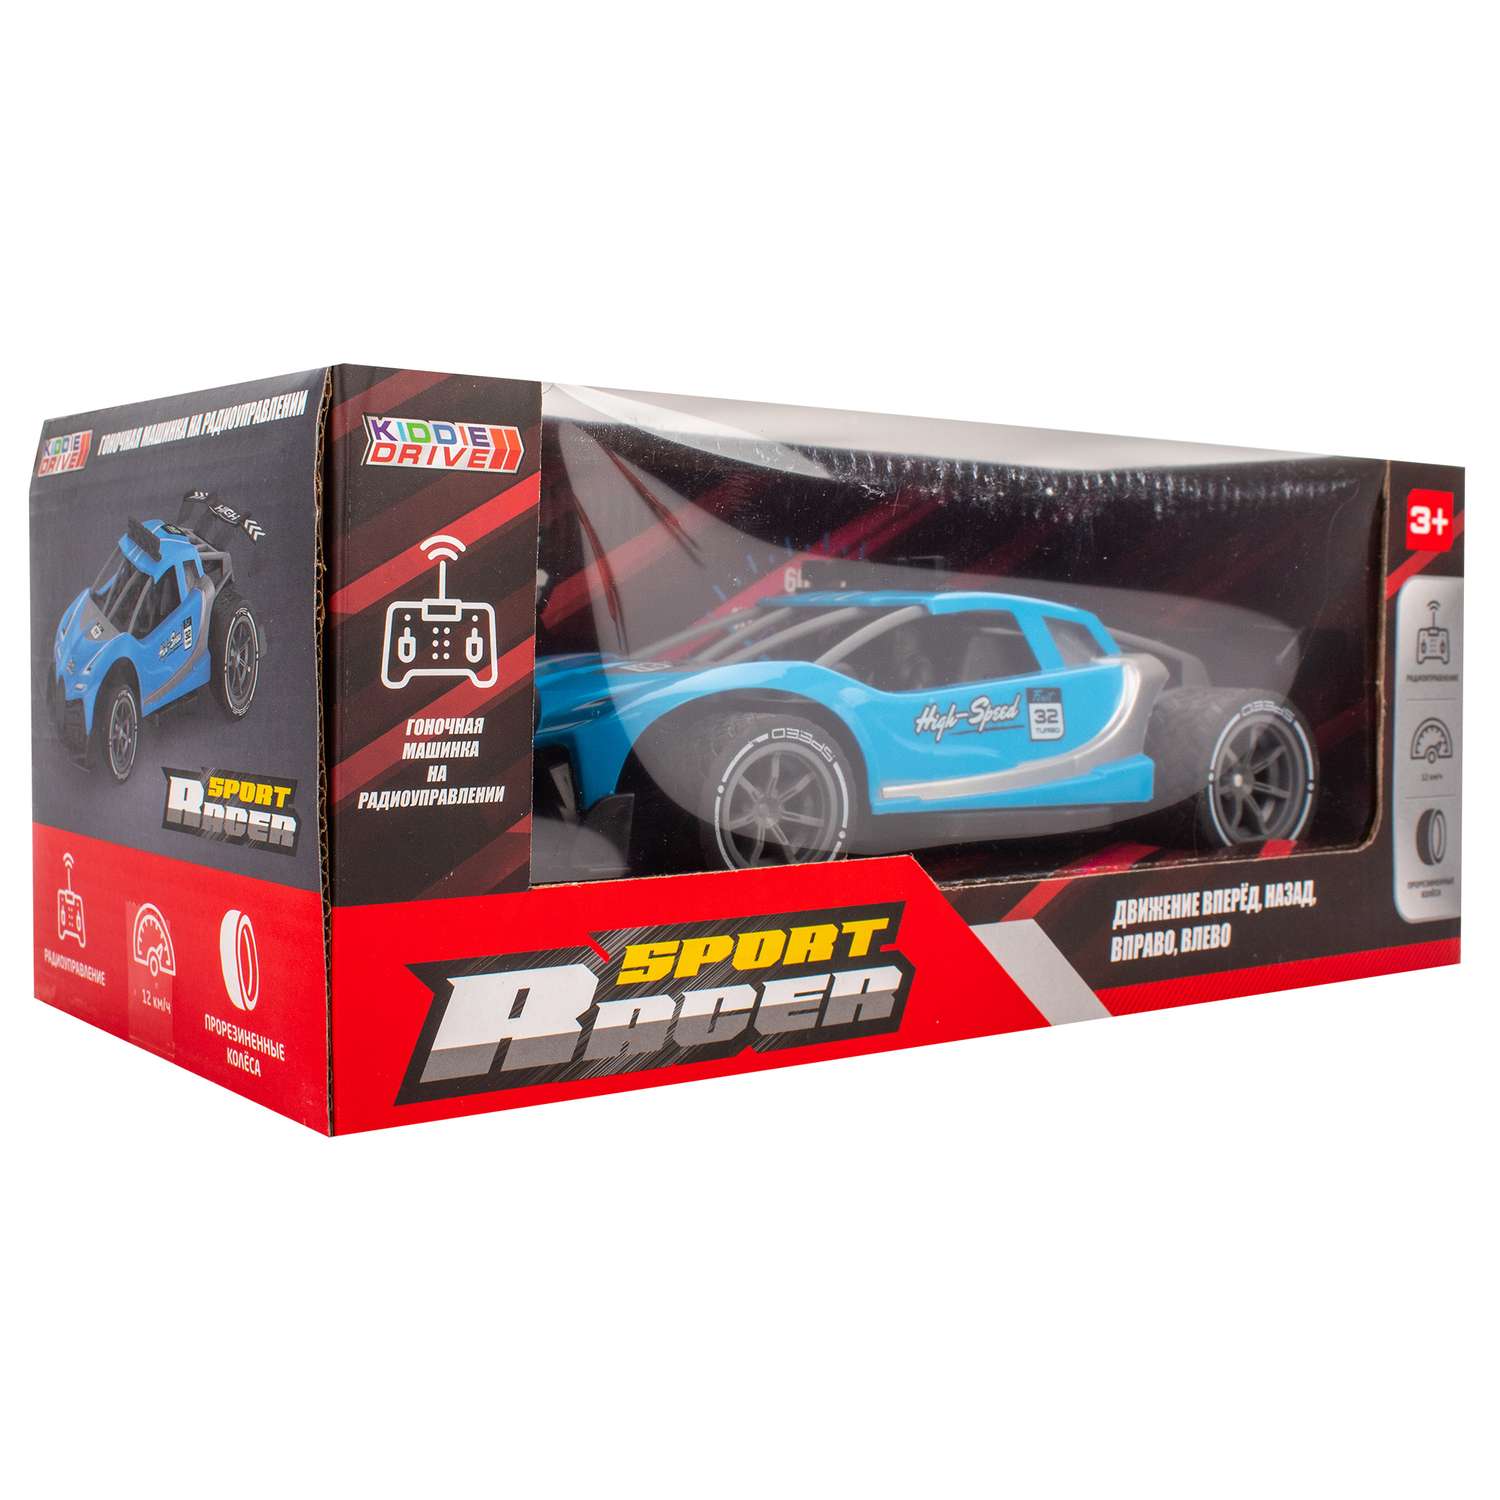 Машинка KiddieDrive Sport Racer радиоуправляемая синяя - фото 10